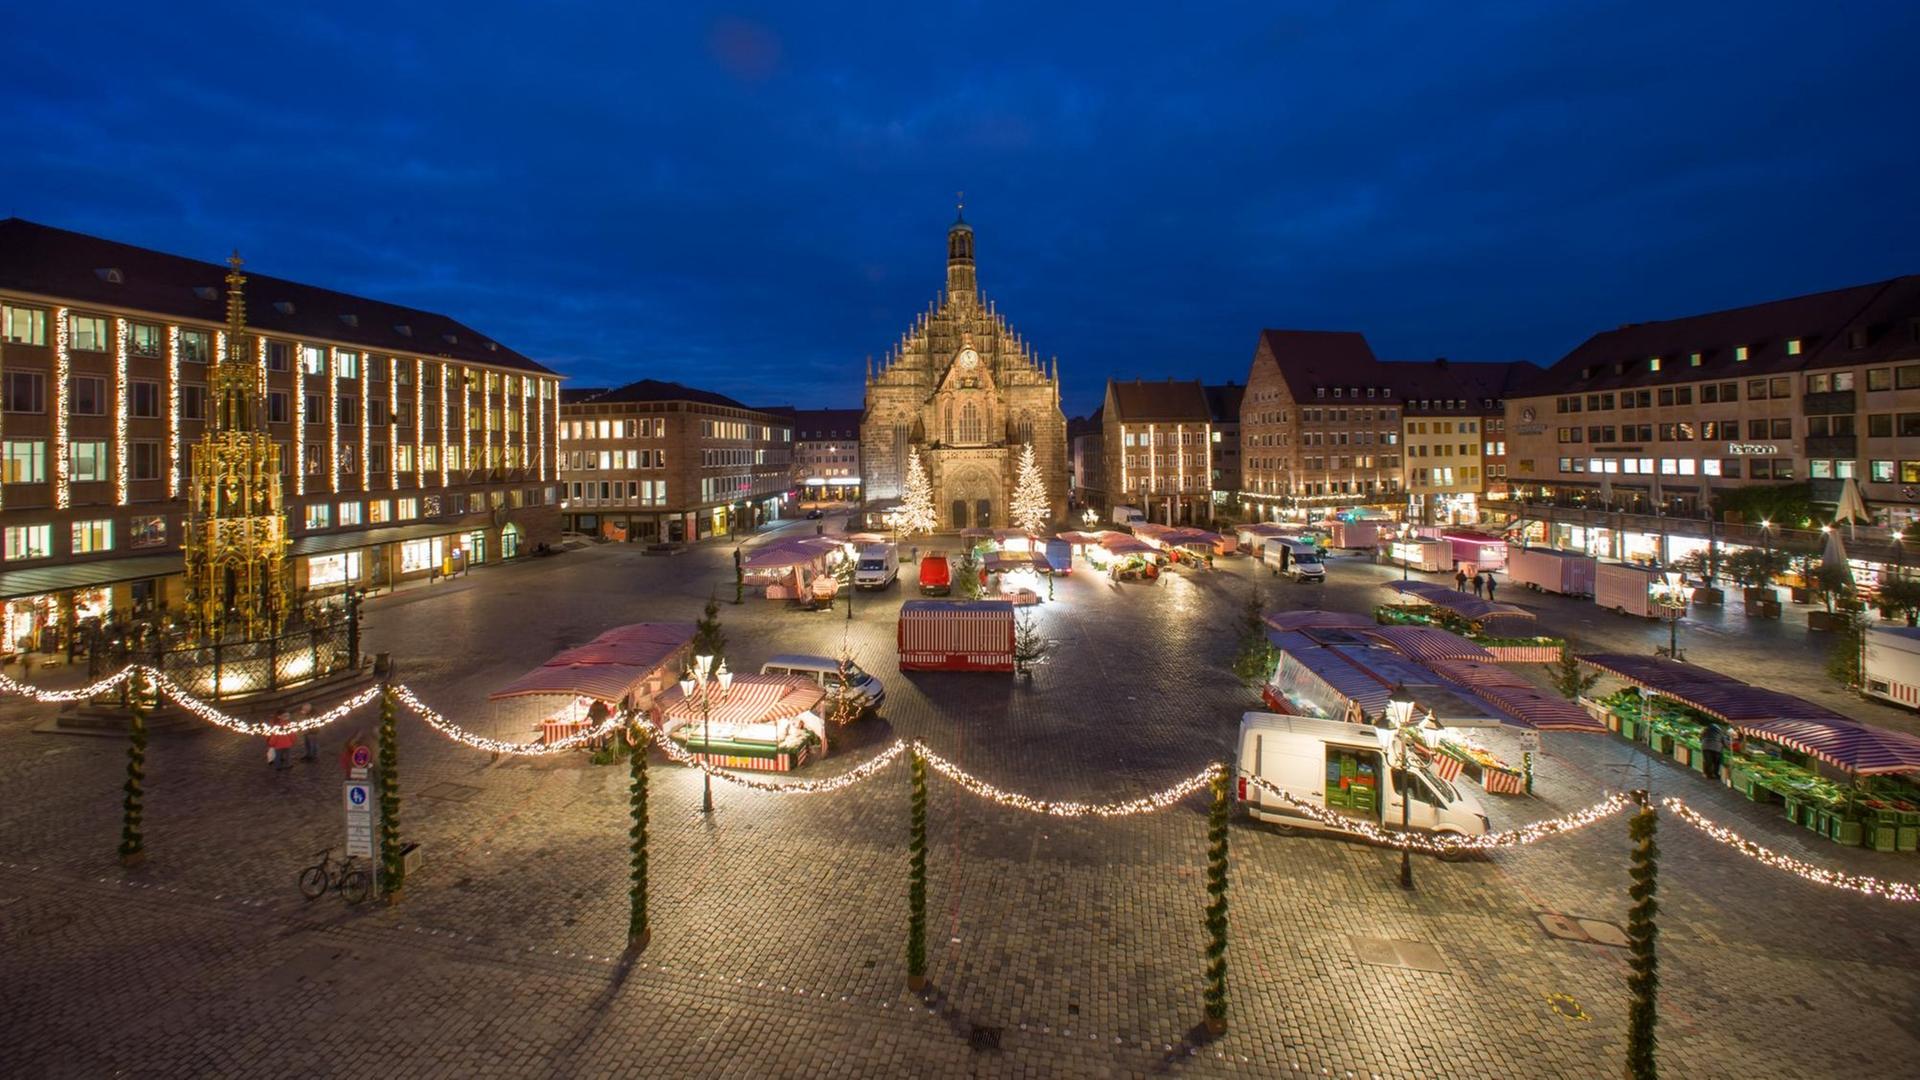 Blick auf den Nürnberger Hauptmarkt, auf dem nicht - wie jedes Jahr - der Christkindlesmarkt stattfindet.